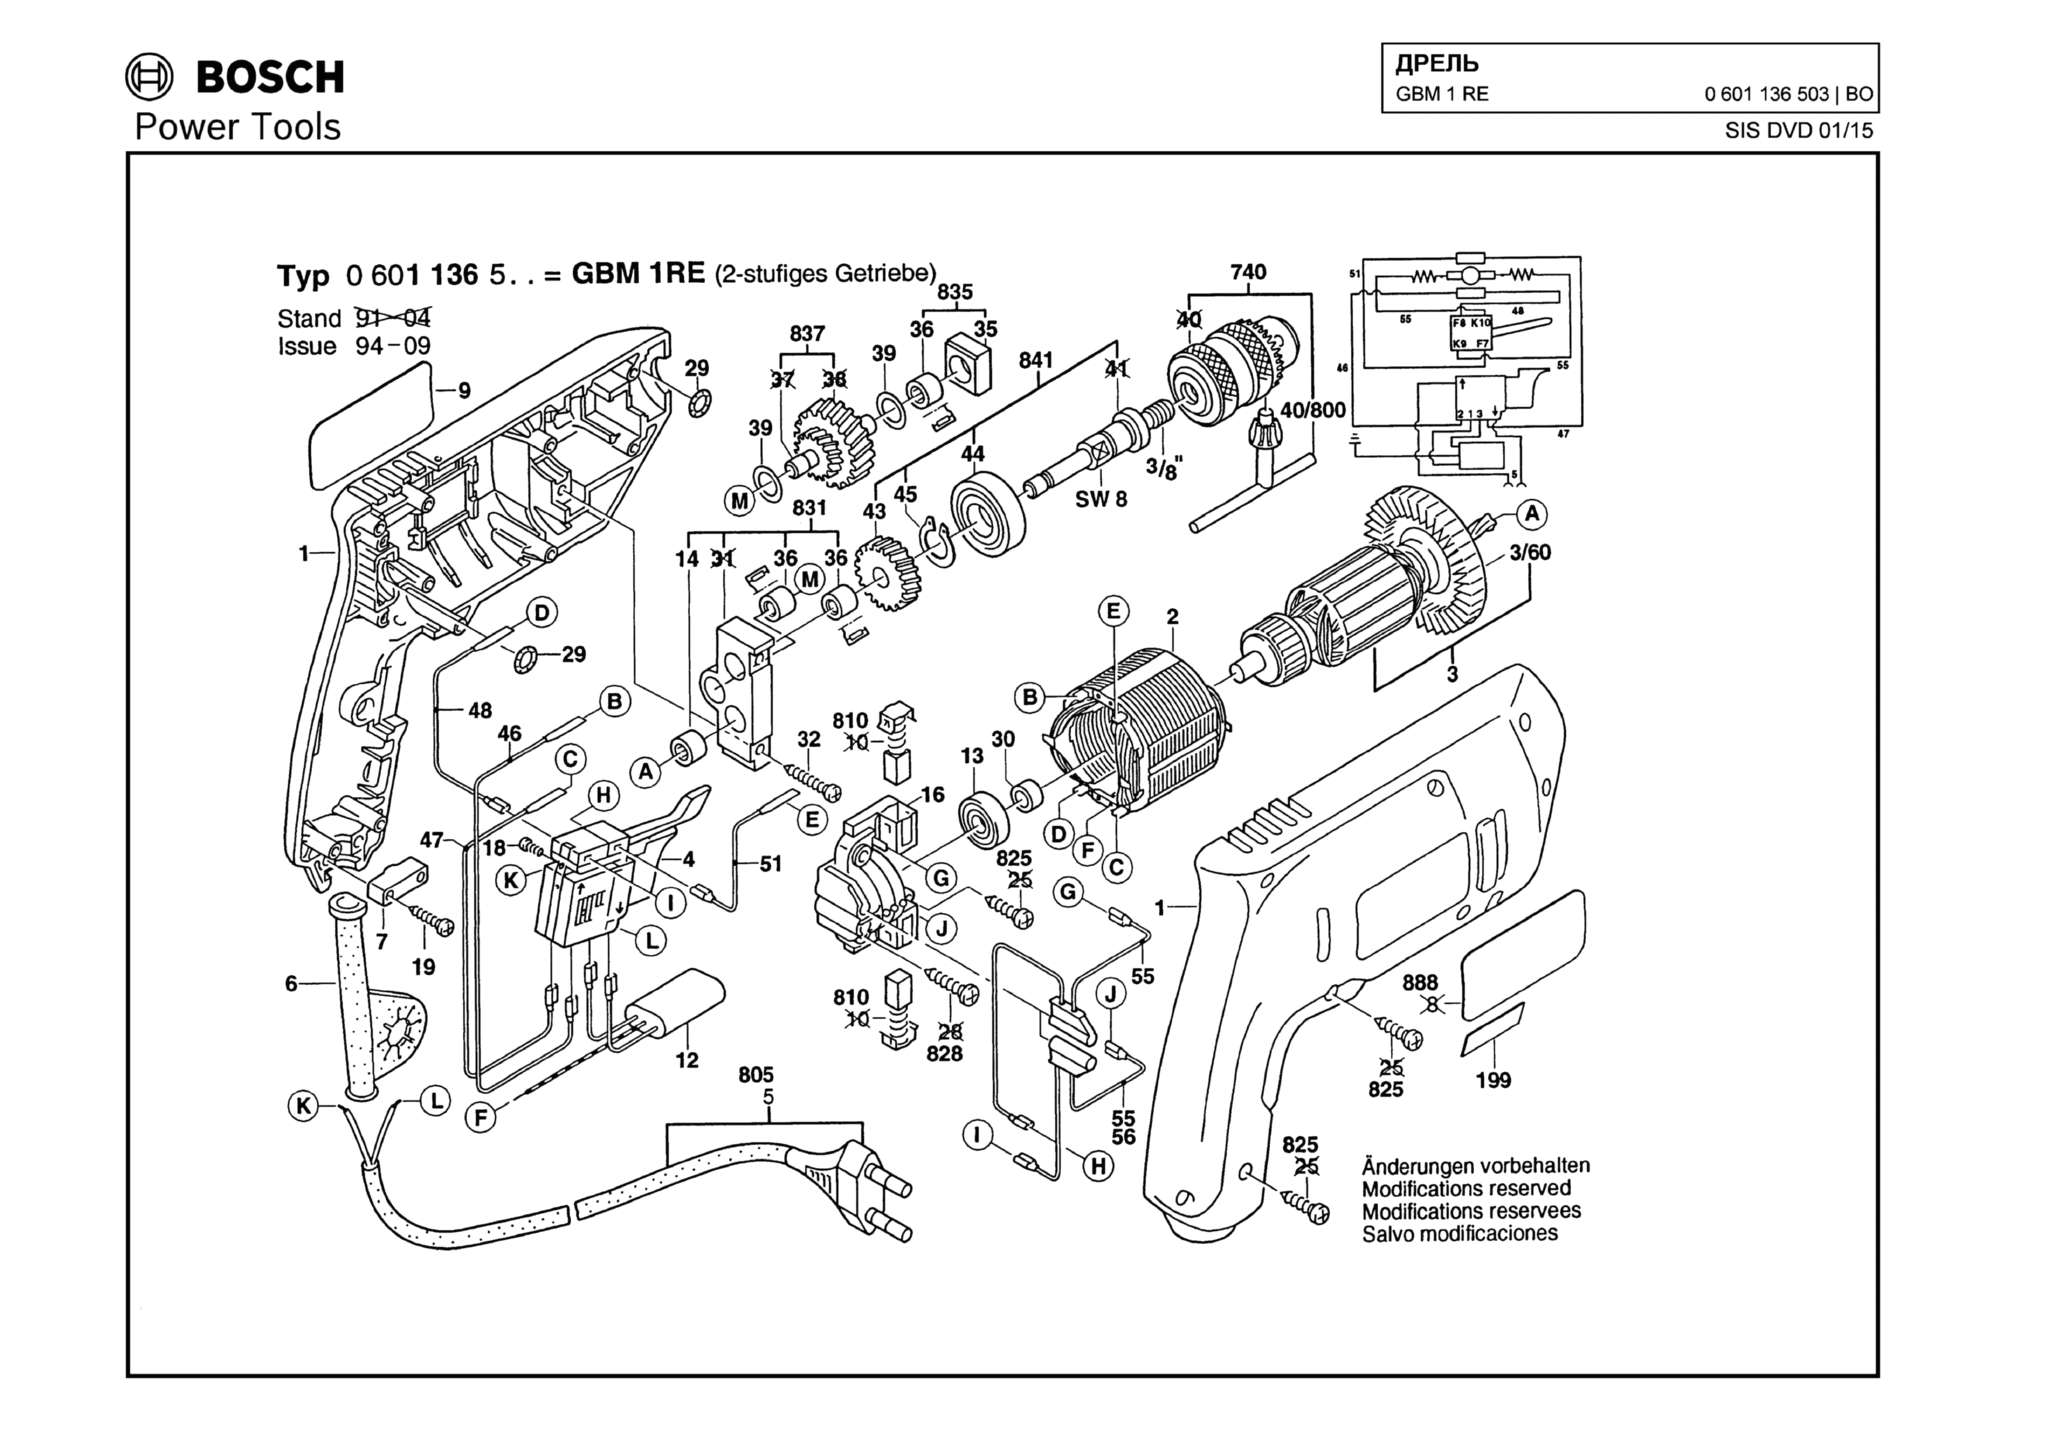 Запчасти, схема и деталировка Bosch GBM 1 RE (ТИП 0601136503)